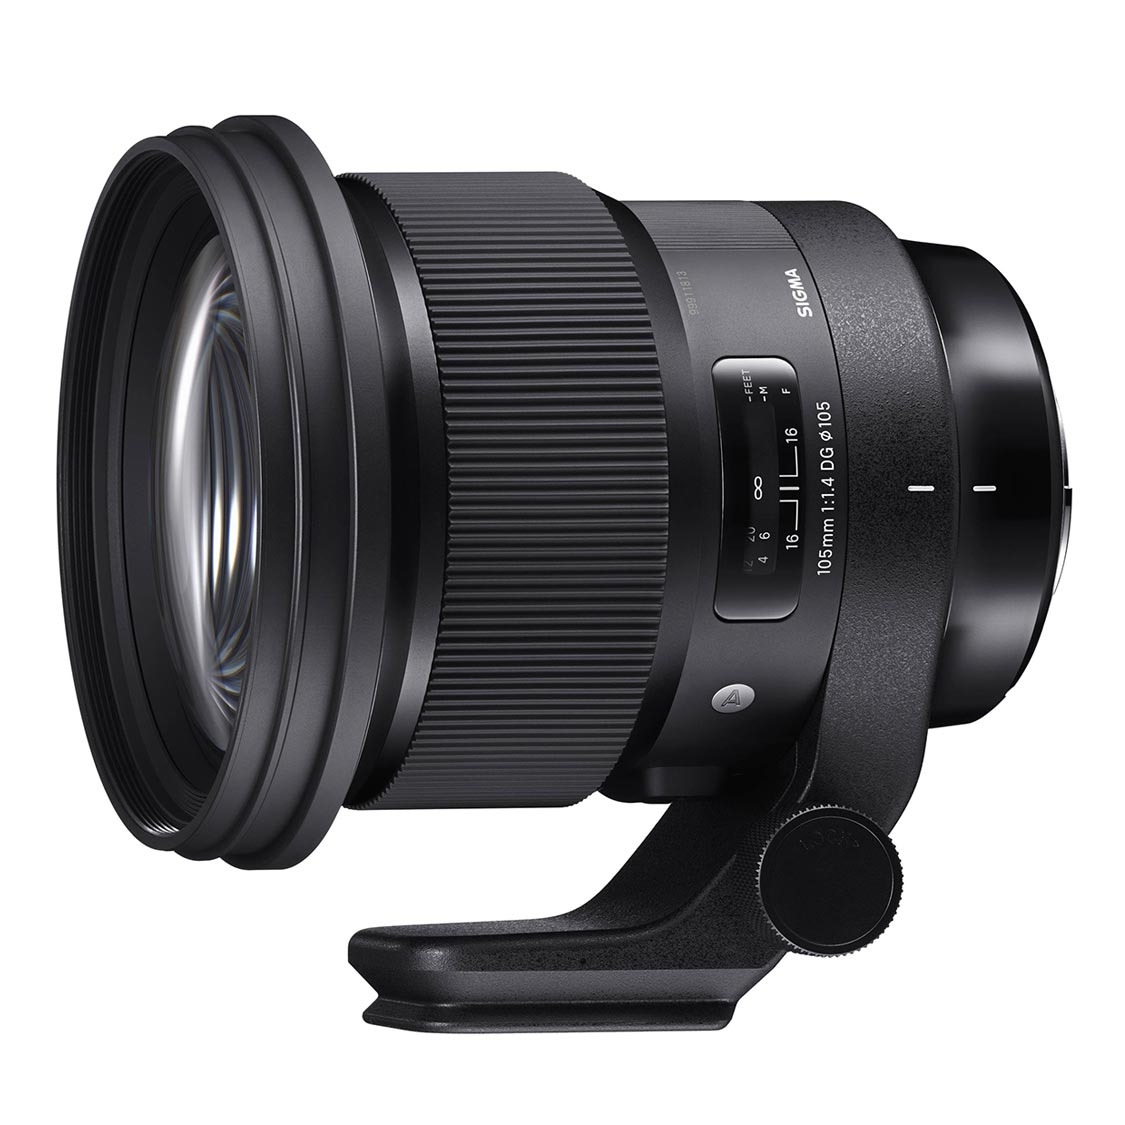 Sigma 105mm f1.4 Art DG HSM Lens for Sony E Mount